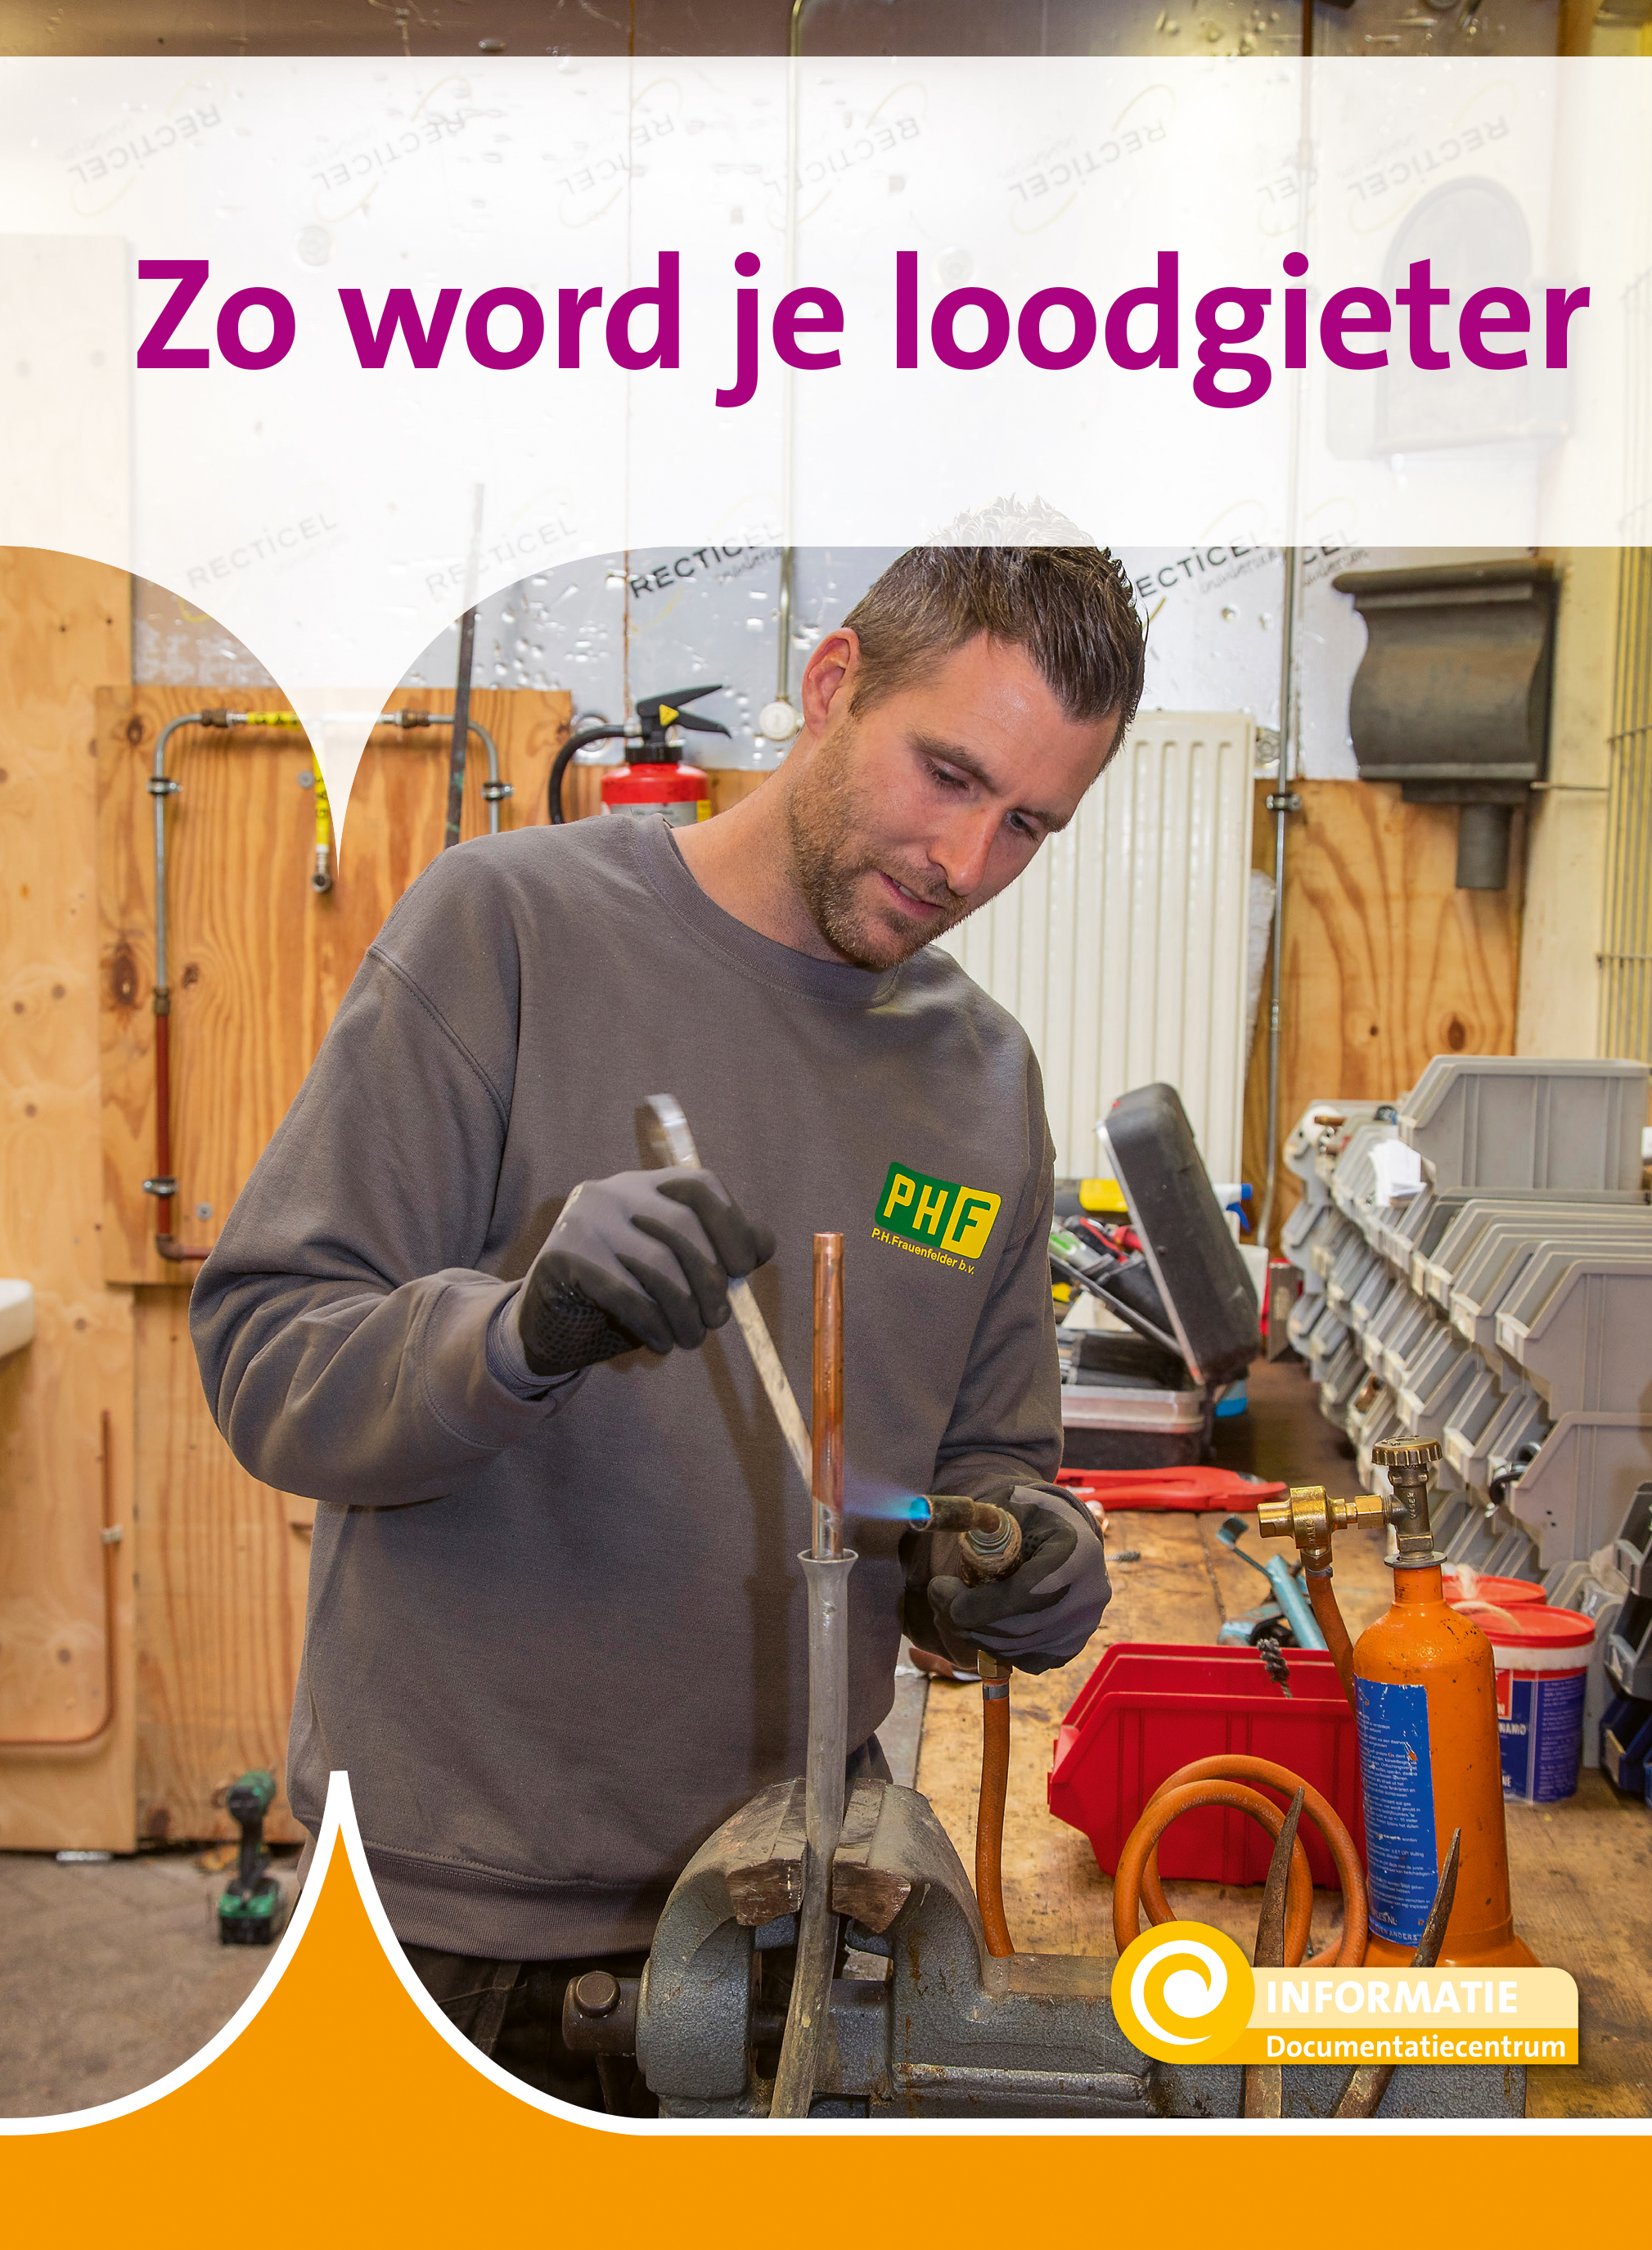  Loodgieter Utrecht Nodig? - Bel 030 - 227 18 73  thumbnail